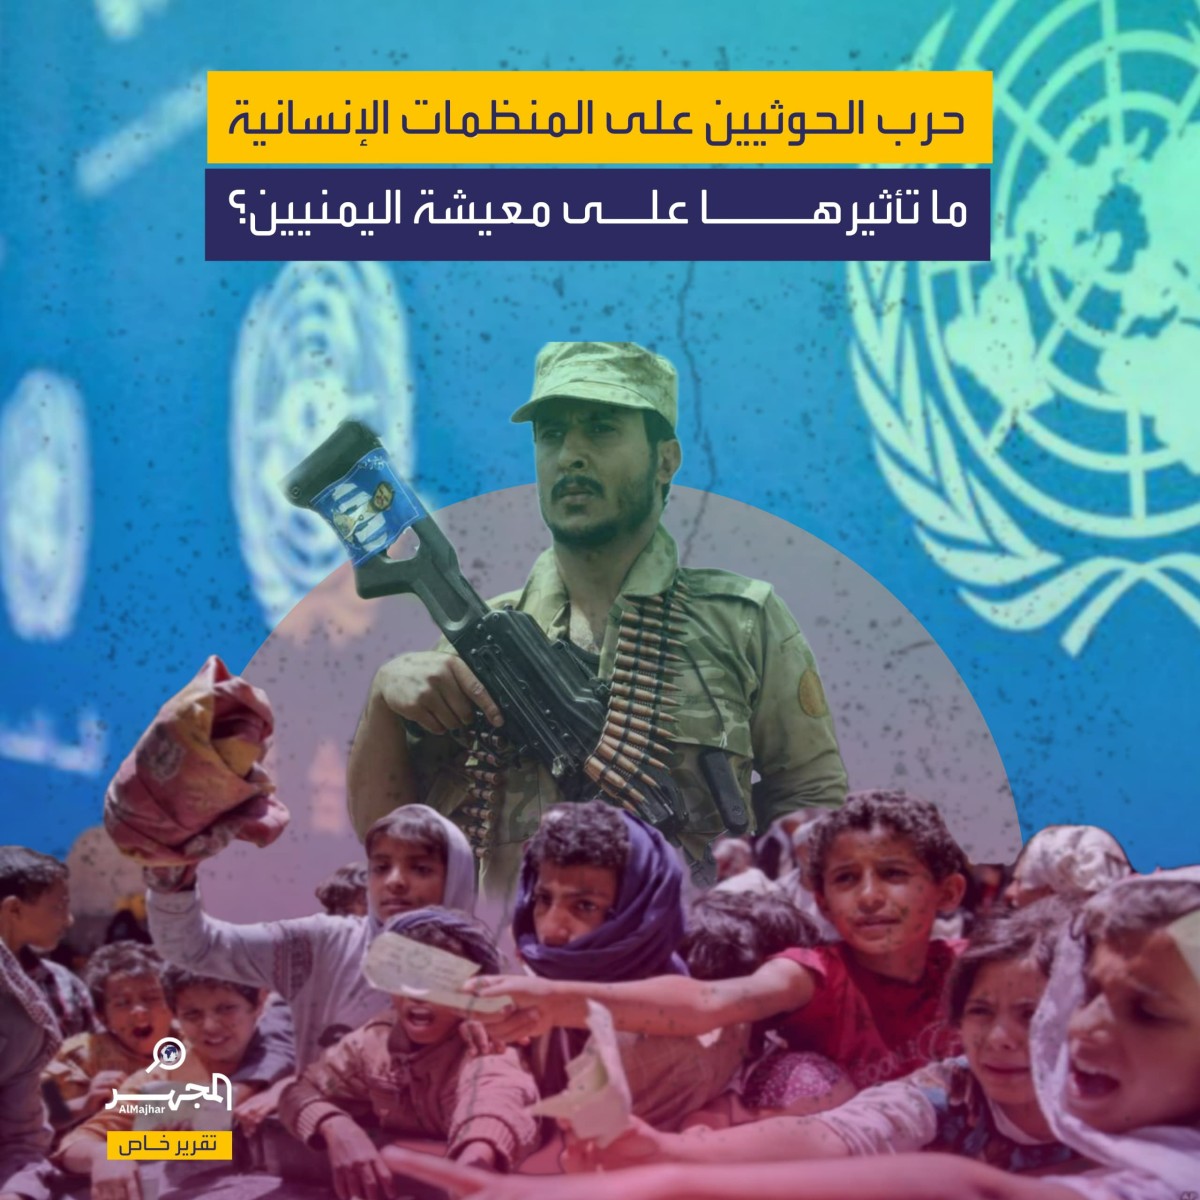 حرب الحوثيين على المنظمات الإنسانية.. ما تأثيرها على معيشة اليمنيين؟ (تقرير خاص)